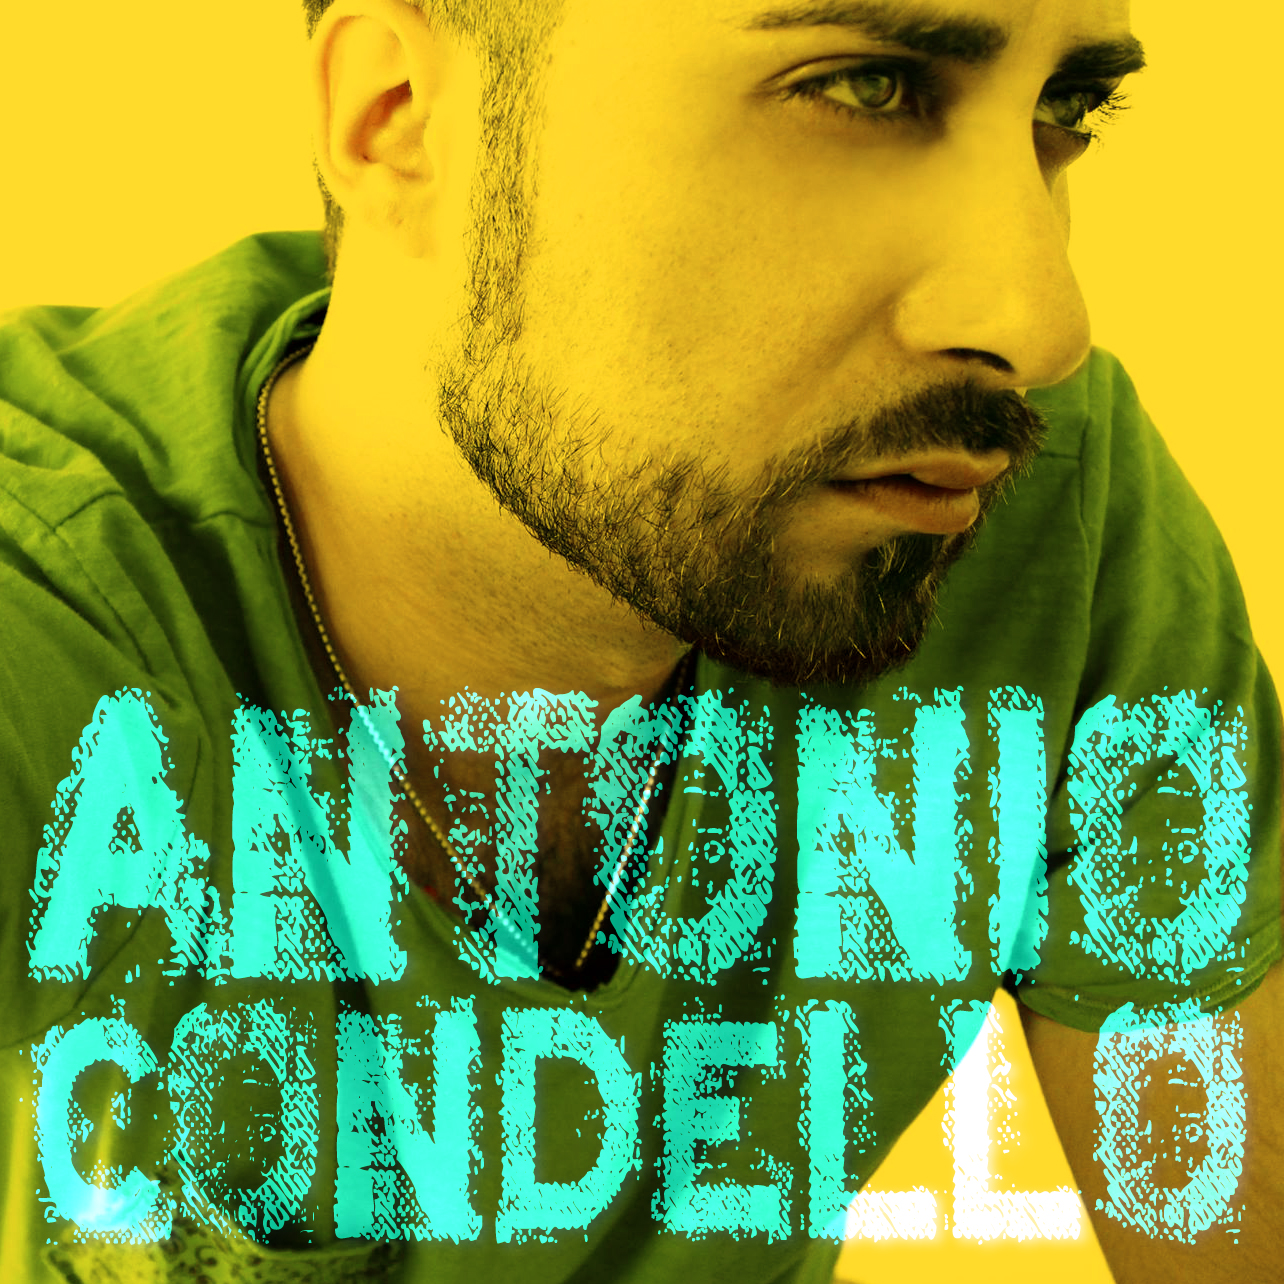 Antonio Condello